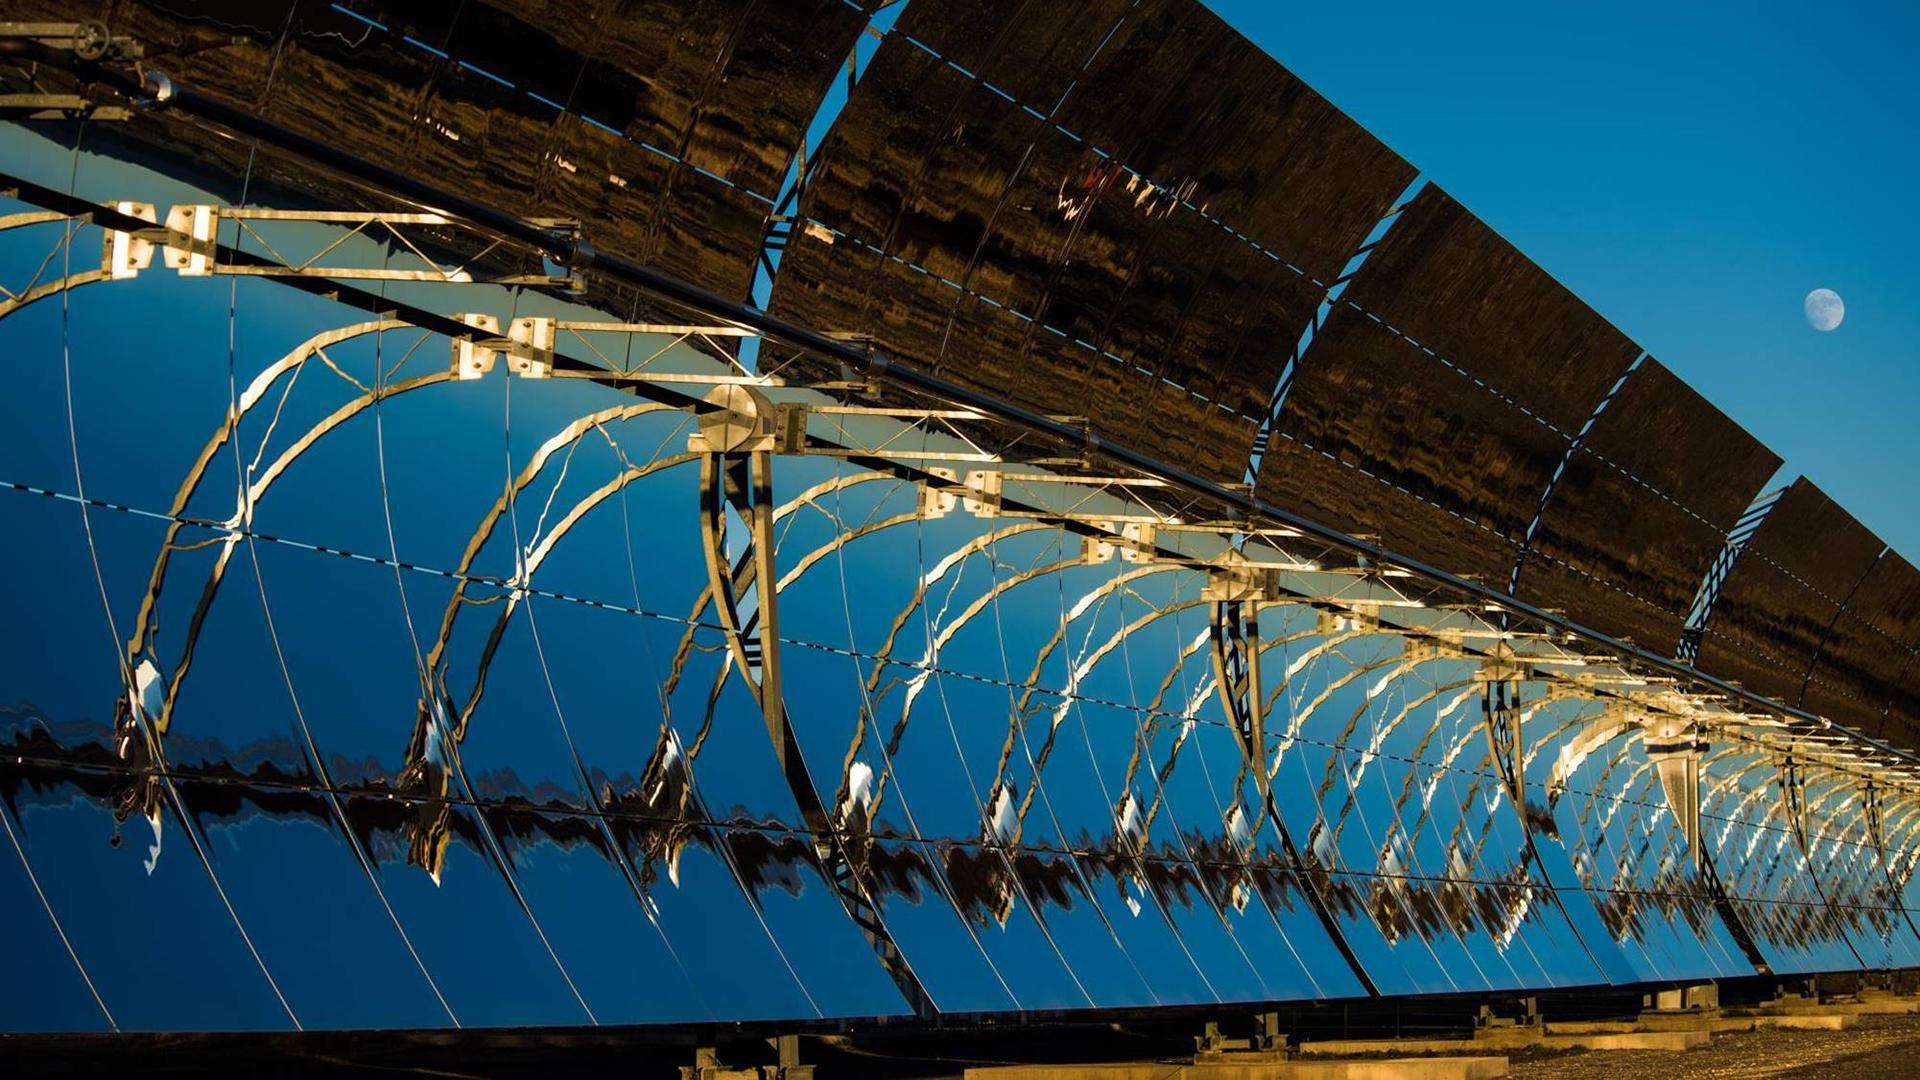 Parabolrinnenanlage im Solarkraftwerk der Plataforma Solar de Almería